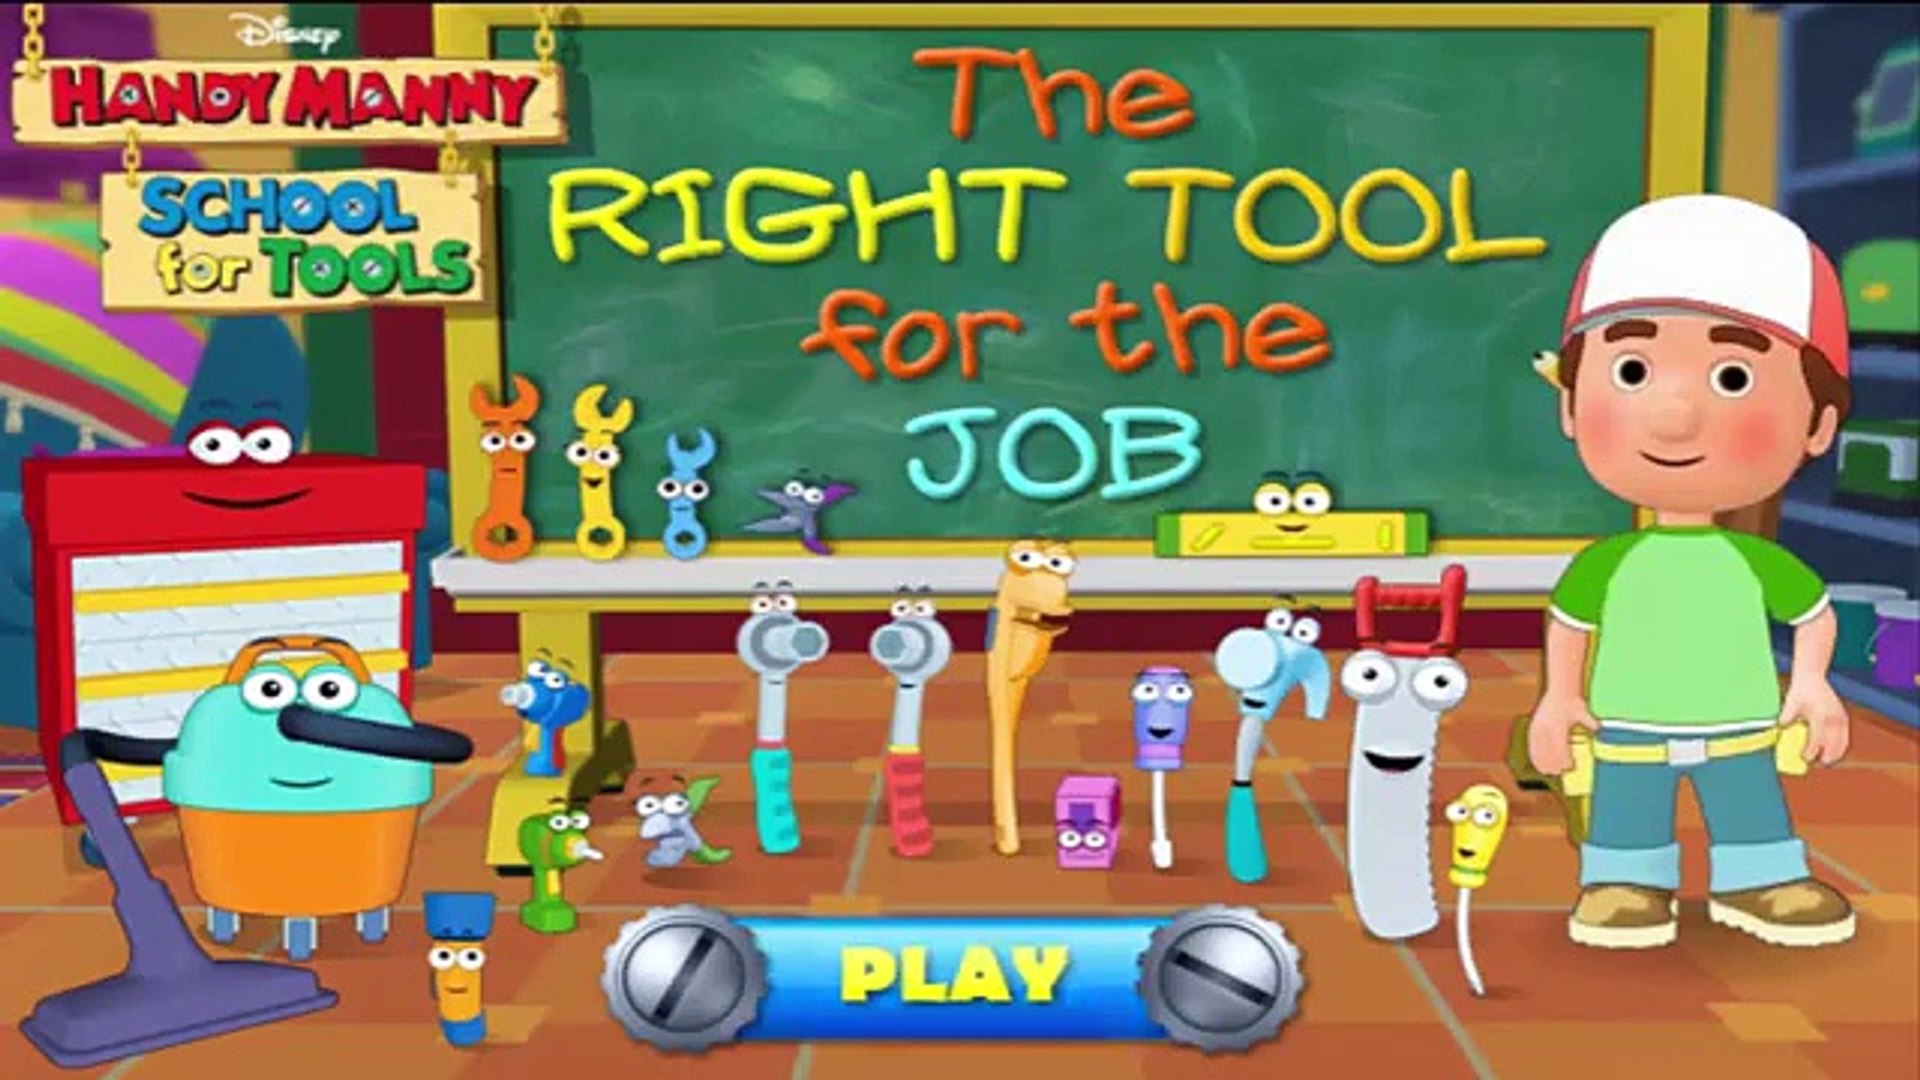 Мультфильм дисней для игра удобный работа работа Мужественный Правильно Школа в инструмент Инструмен